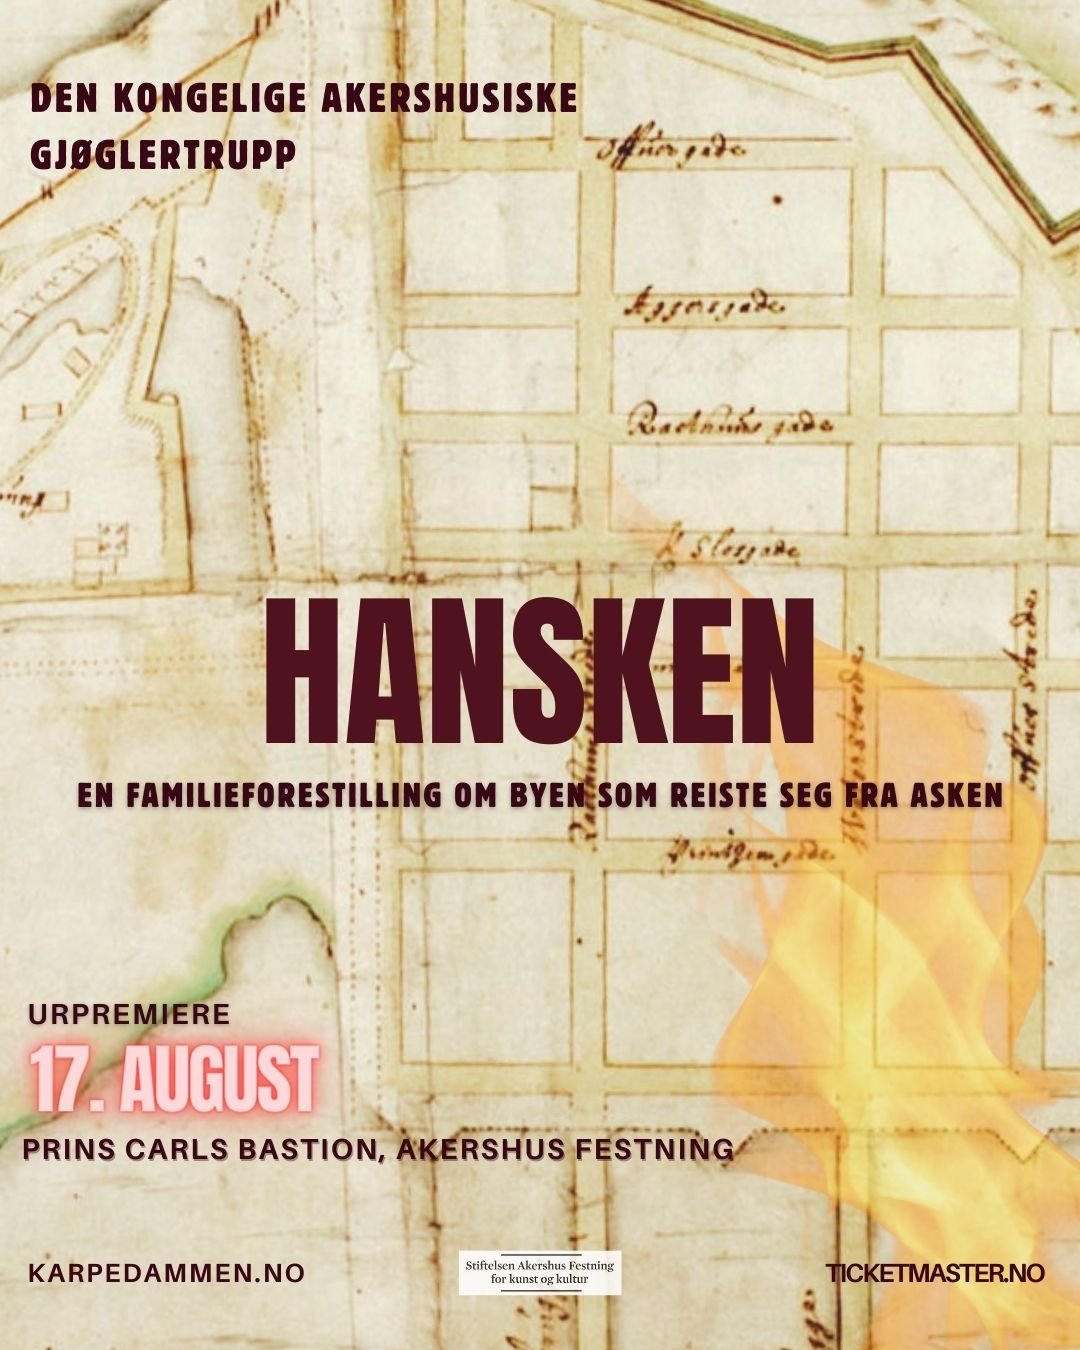 Hansken